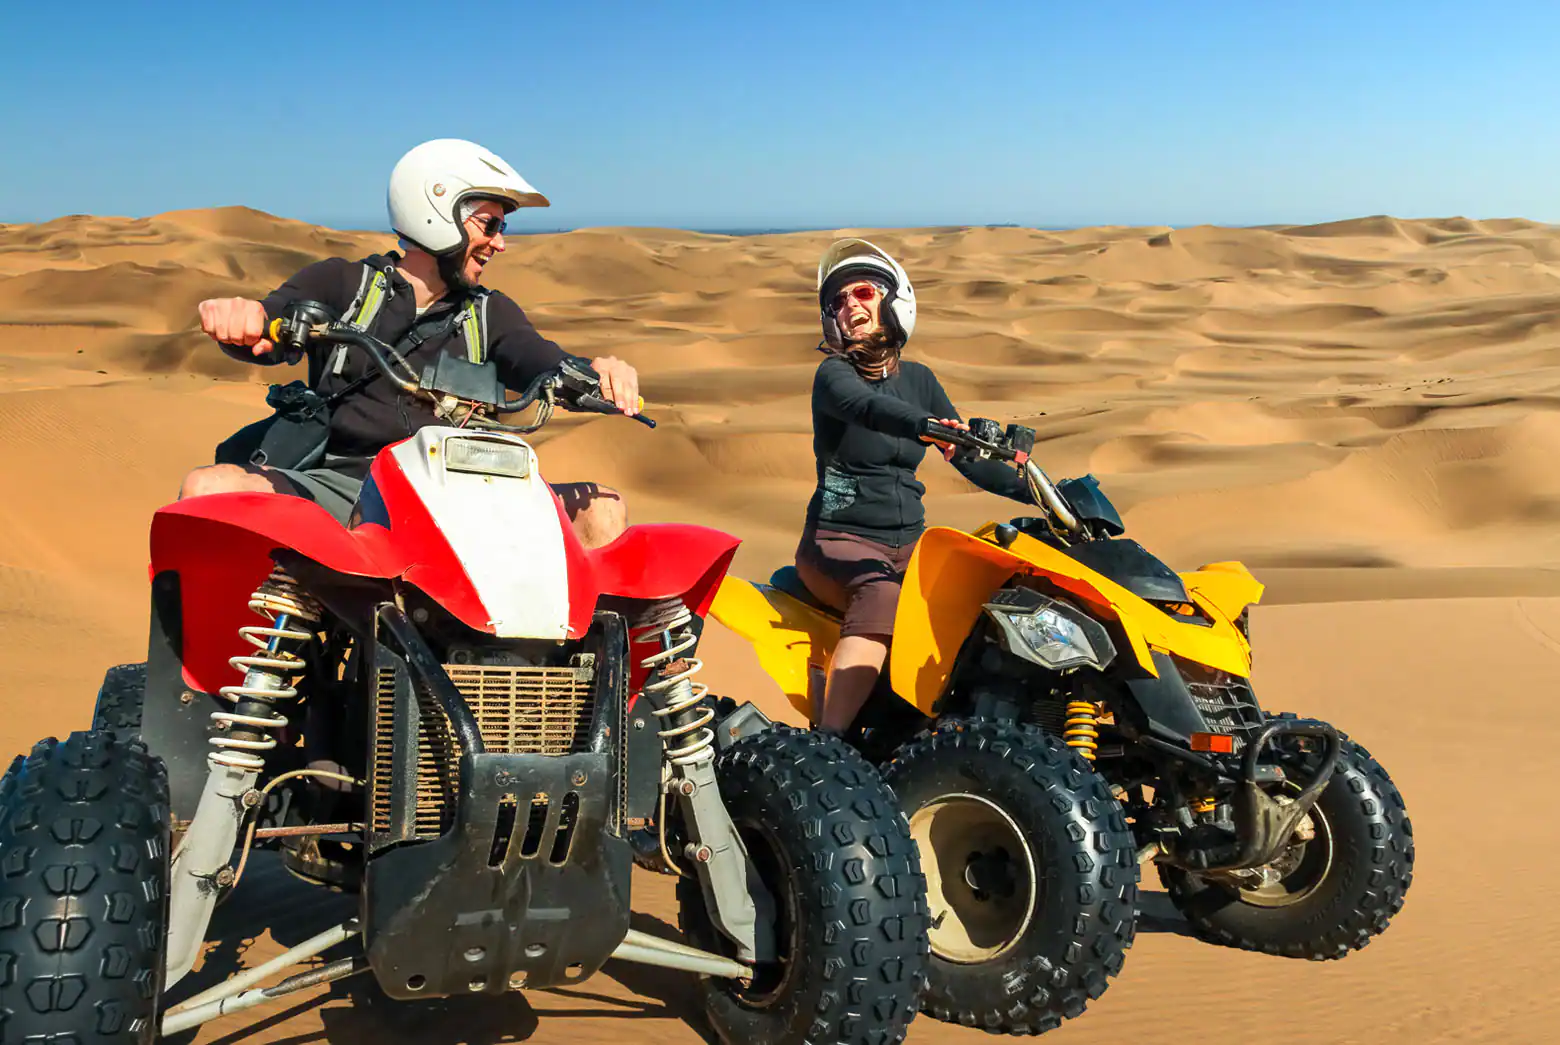 Dubai Thrills in the Sands